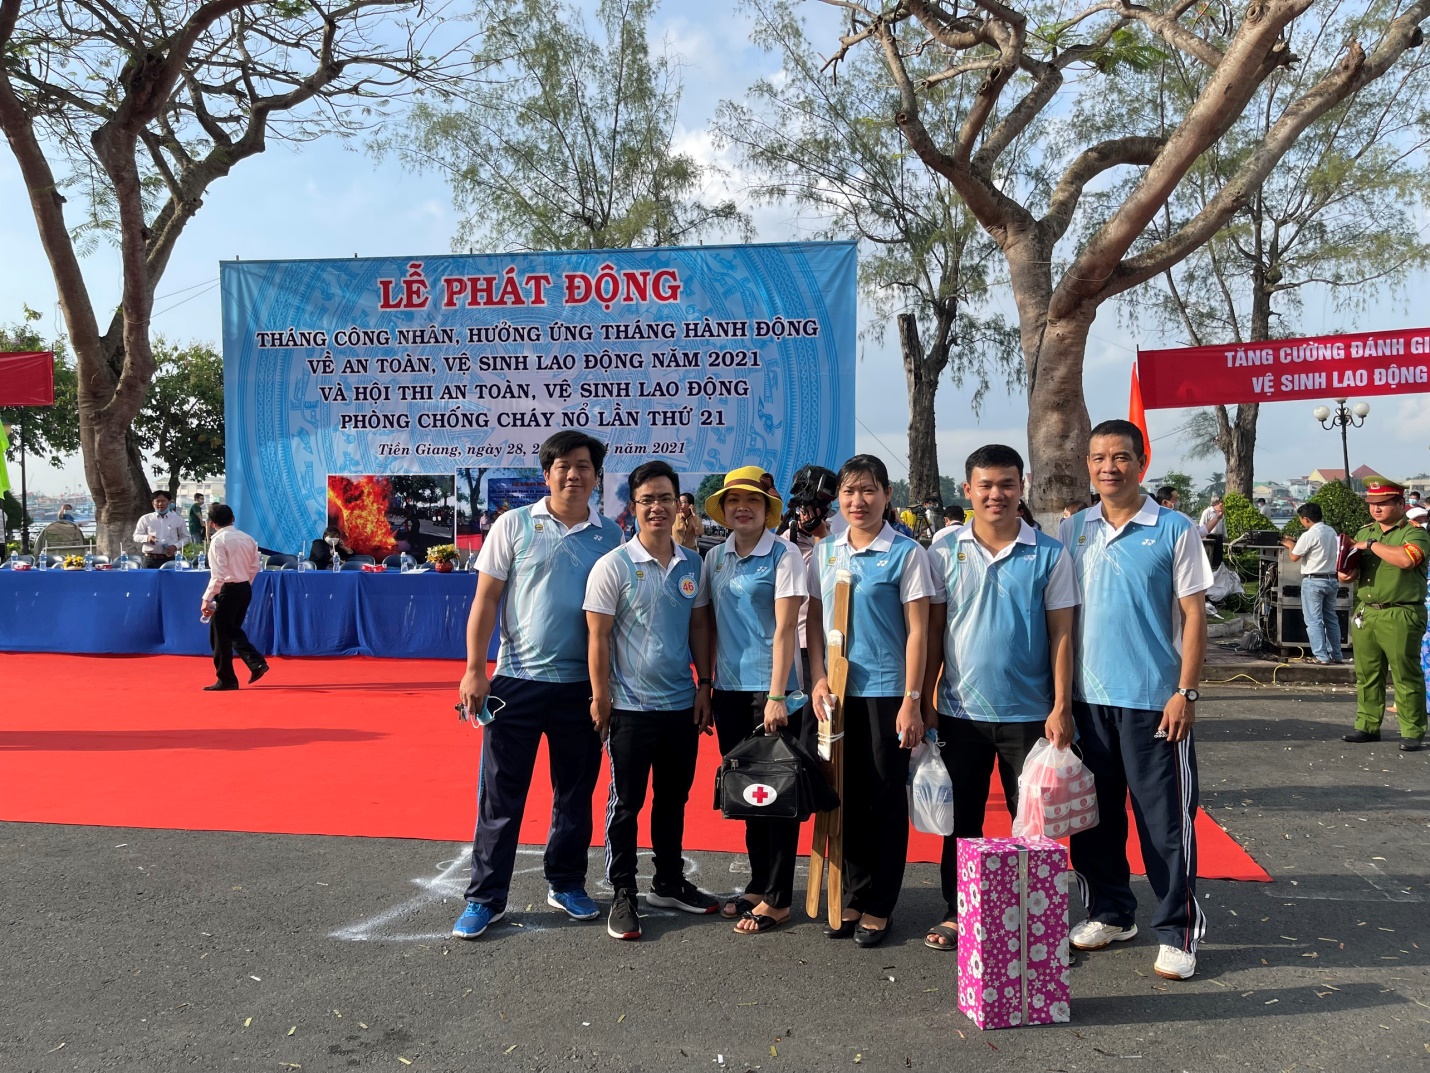 Cục Thống kê  Tiền Giang tham gia Hội thi ATVSLĐ - PCCN tỉnh Tiền Giang lần thứ 21 - năm 2021